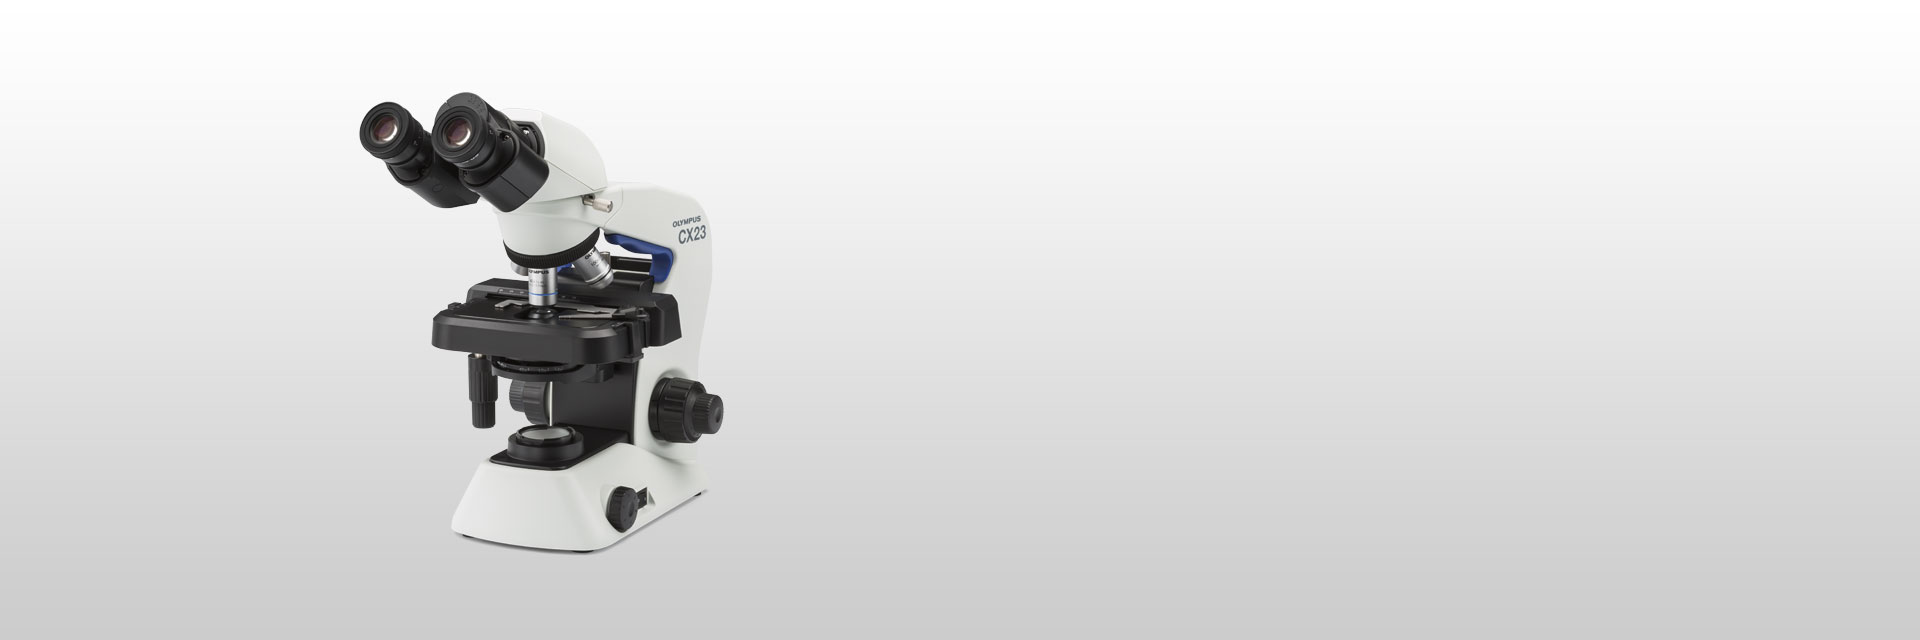 教育用生物顕微鏡 CX23 | オリンパス ライフサイエンス